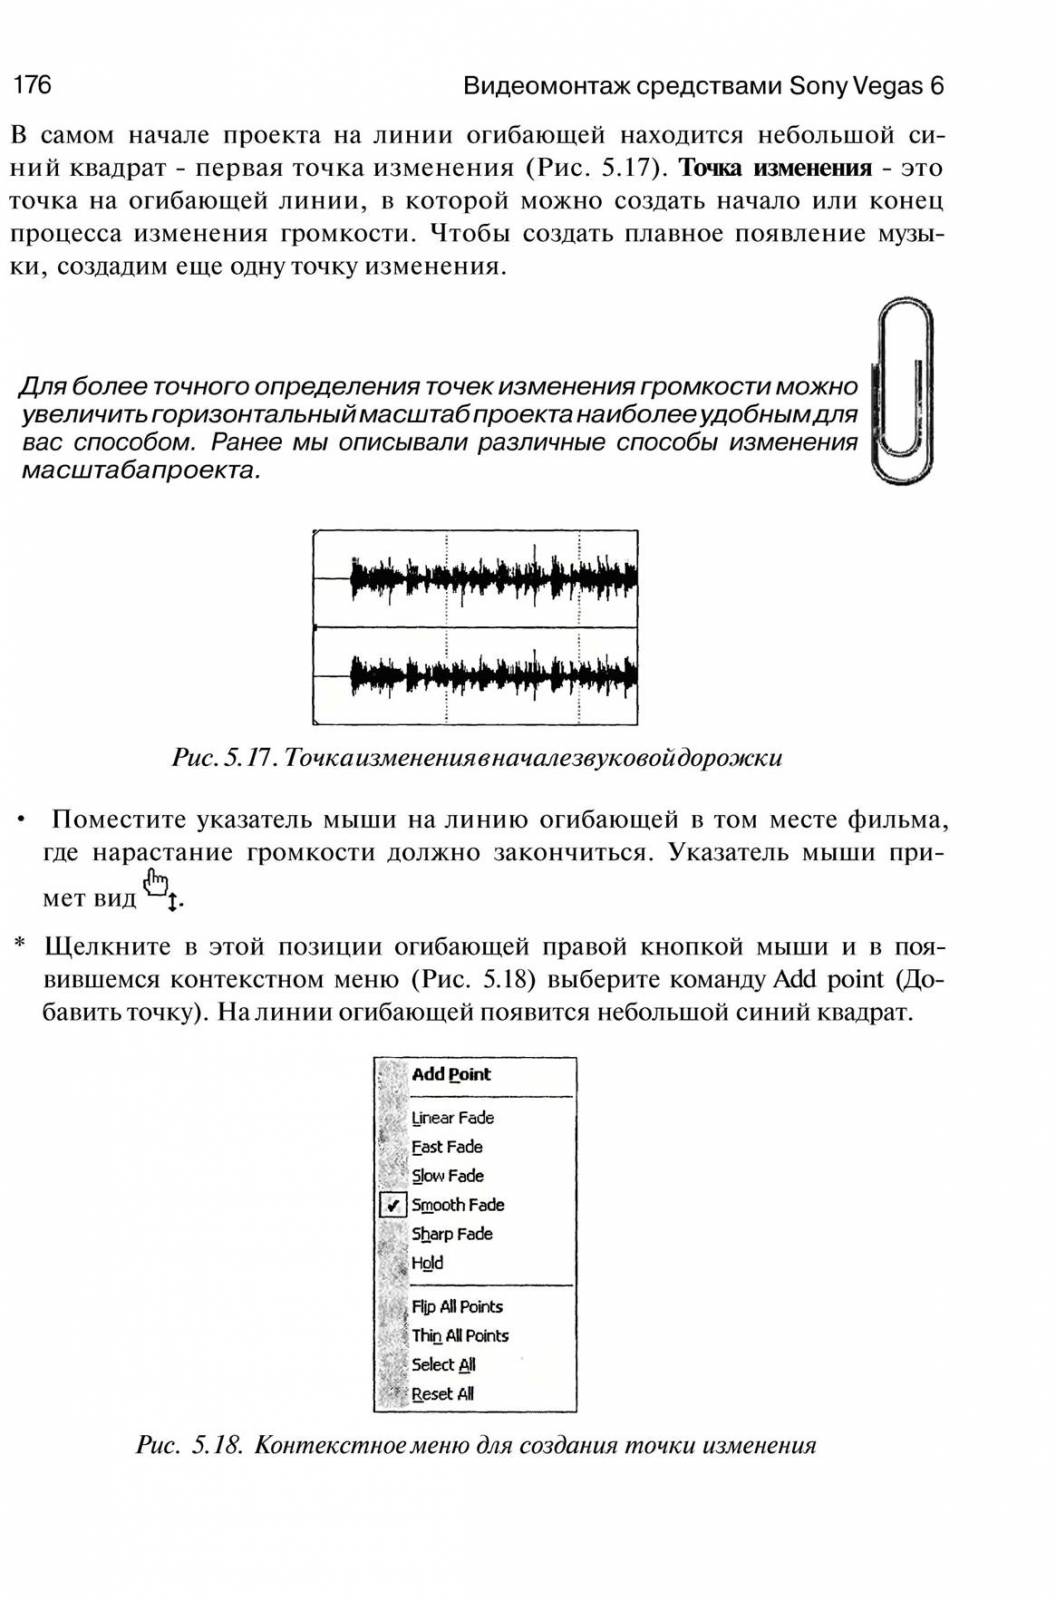 http://redaktori-uroki.3dn.ru/_ph/6/314588648.jpg